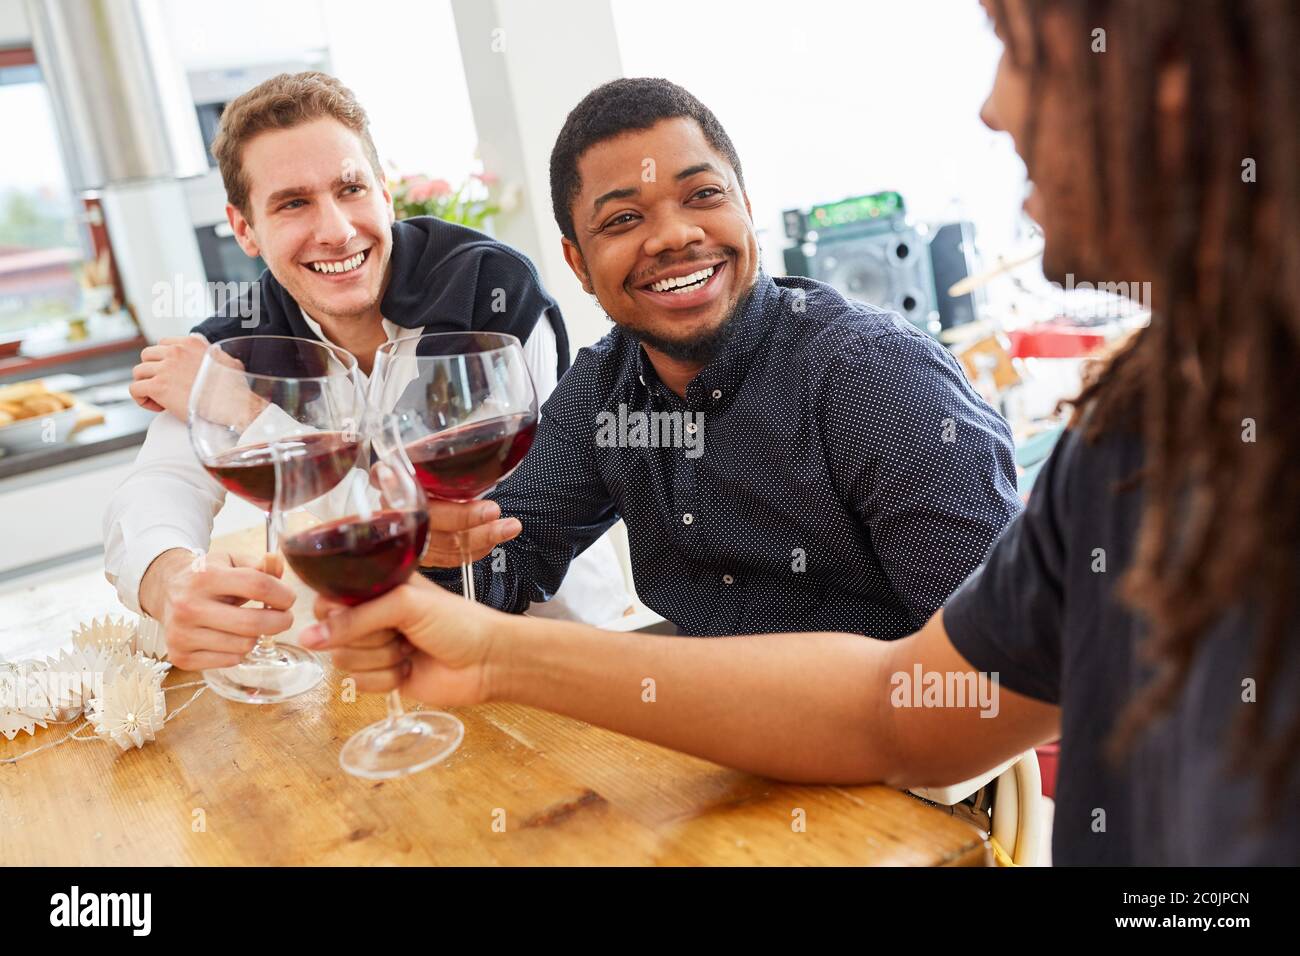 Groupe d'hommes joyeux comme amis clin des verres de vin dans une cuisine commune Banque D'Images